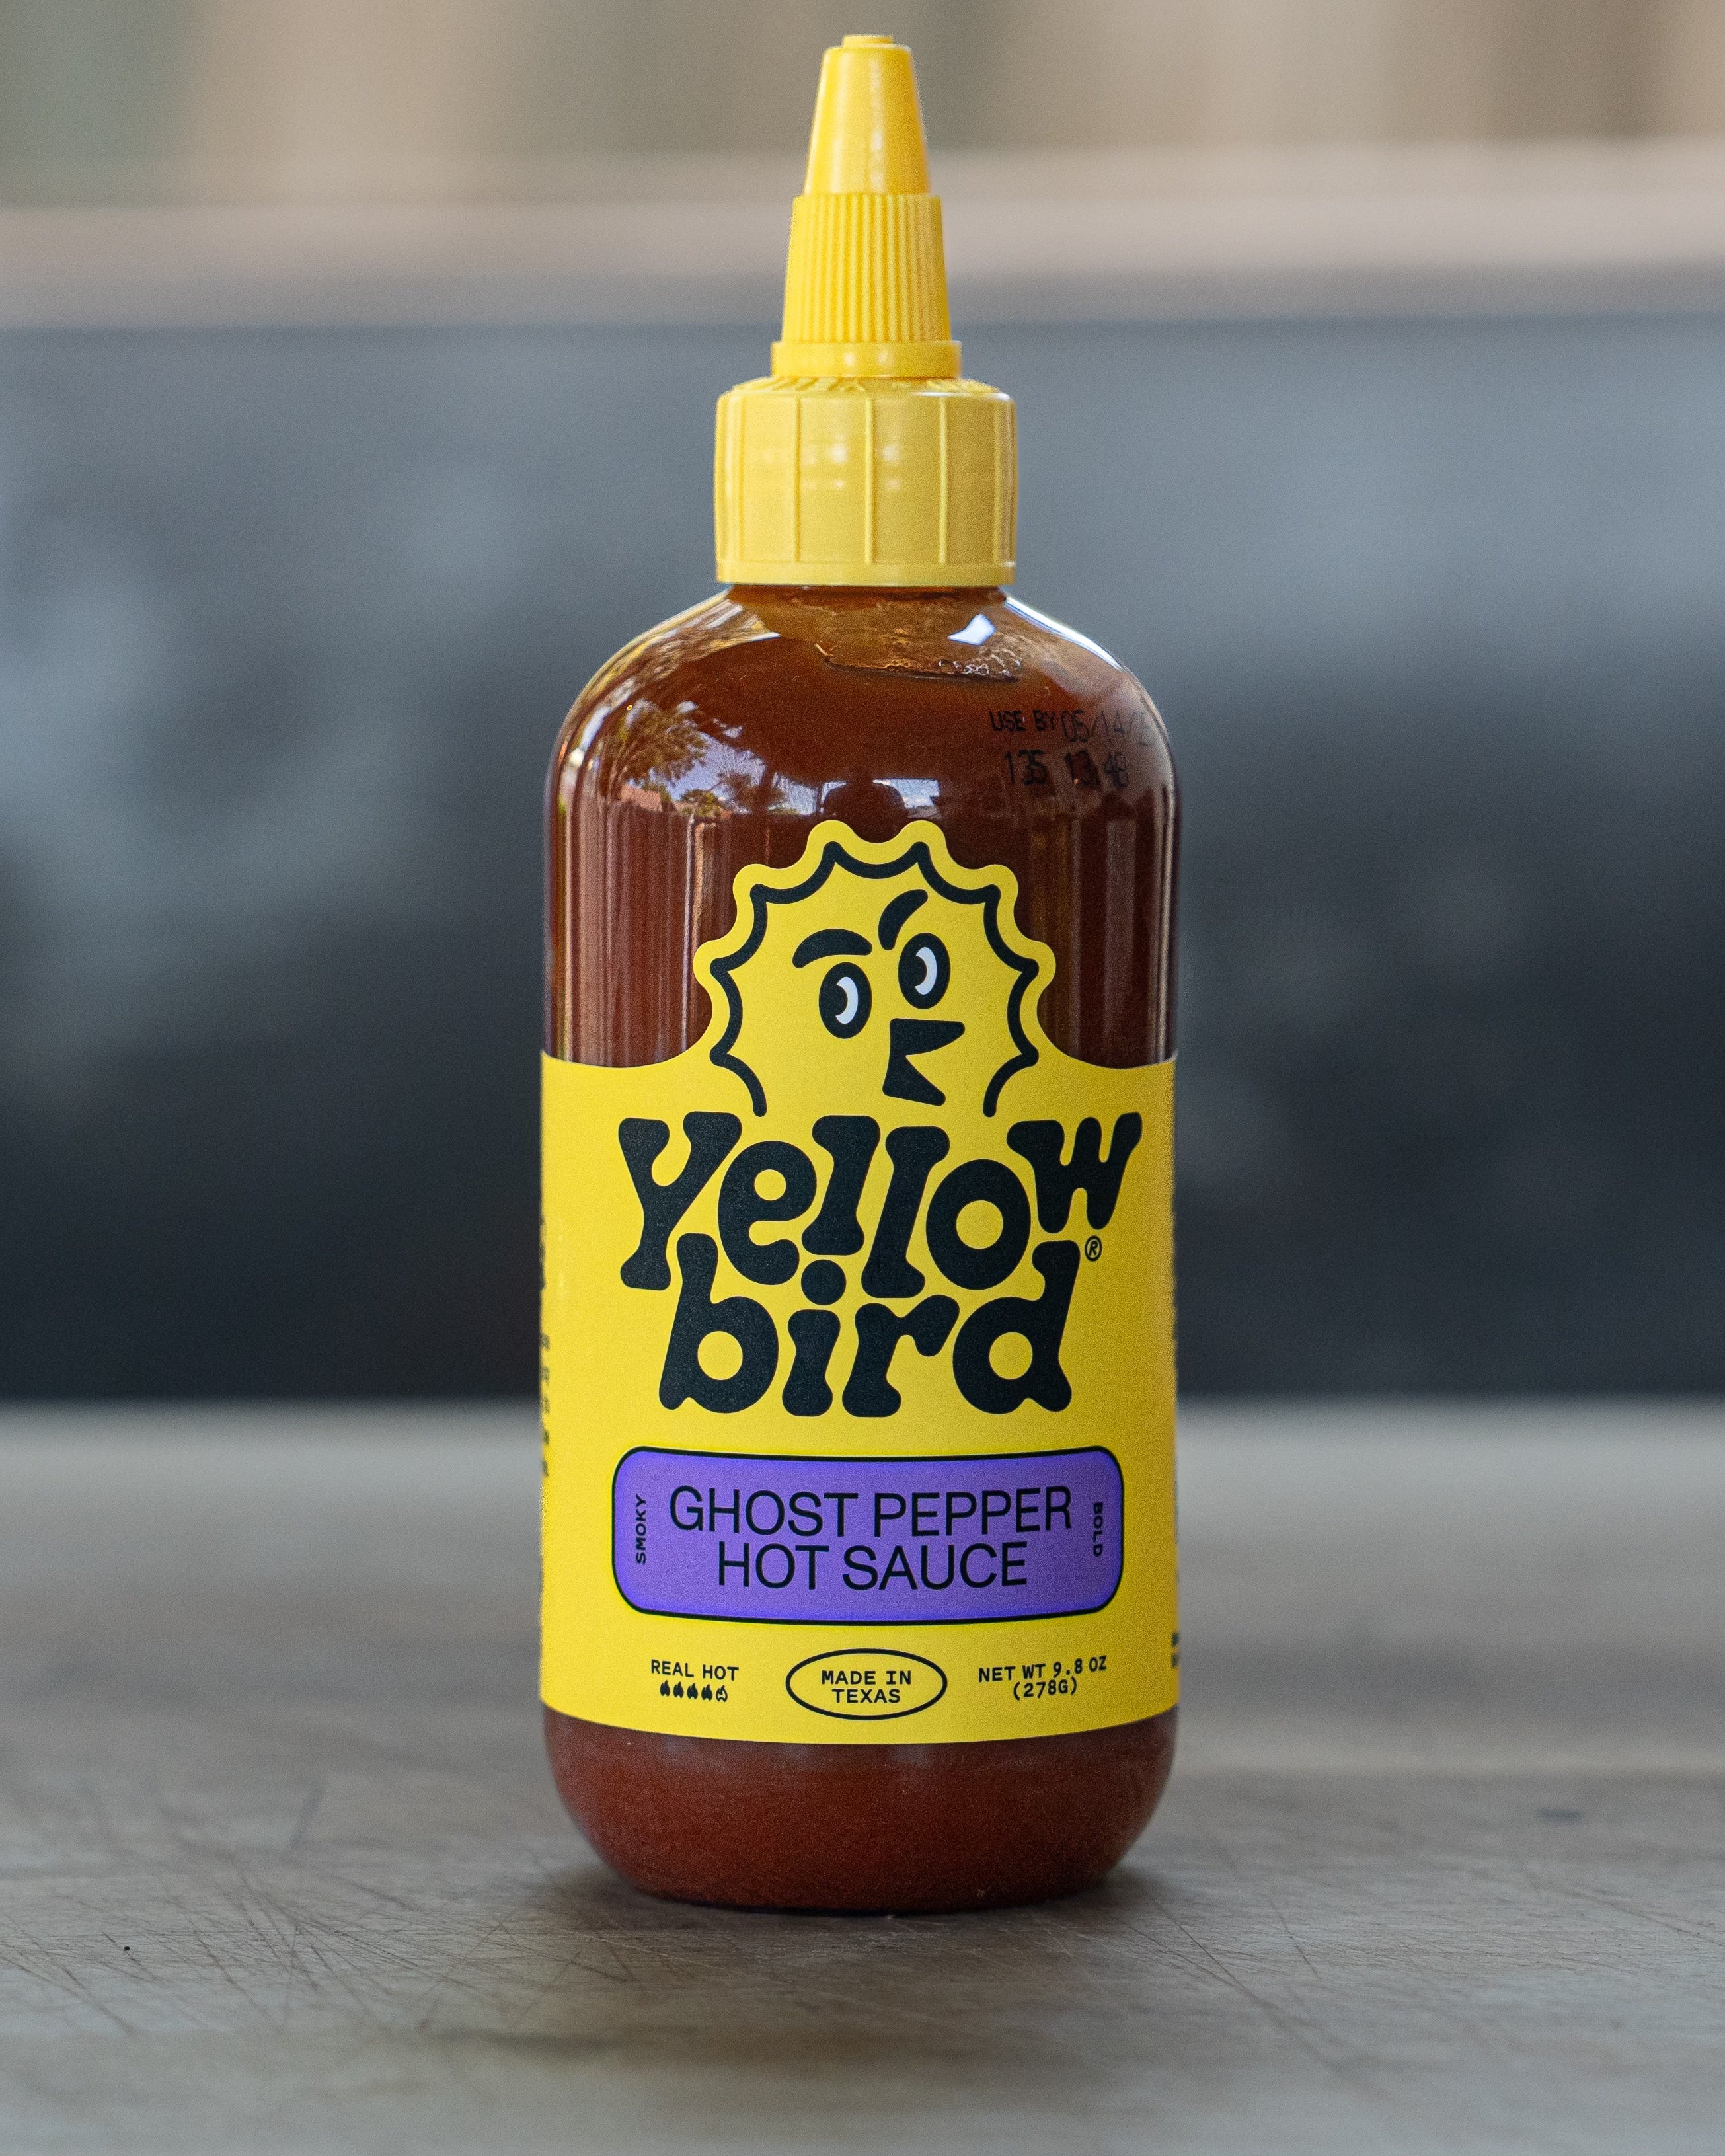 Yellowbird Ghost Pepper Hot Sauce